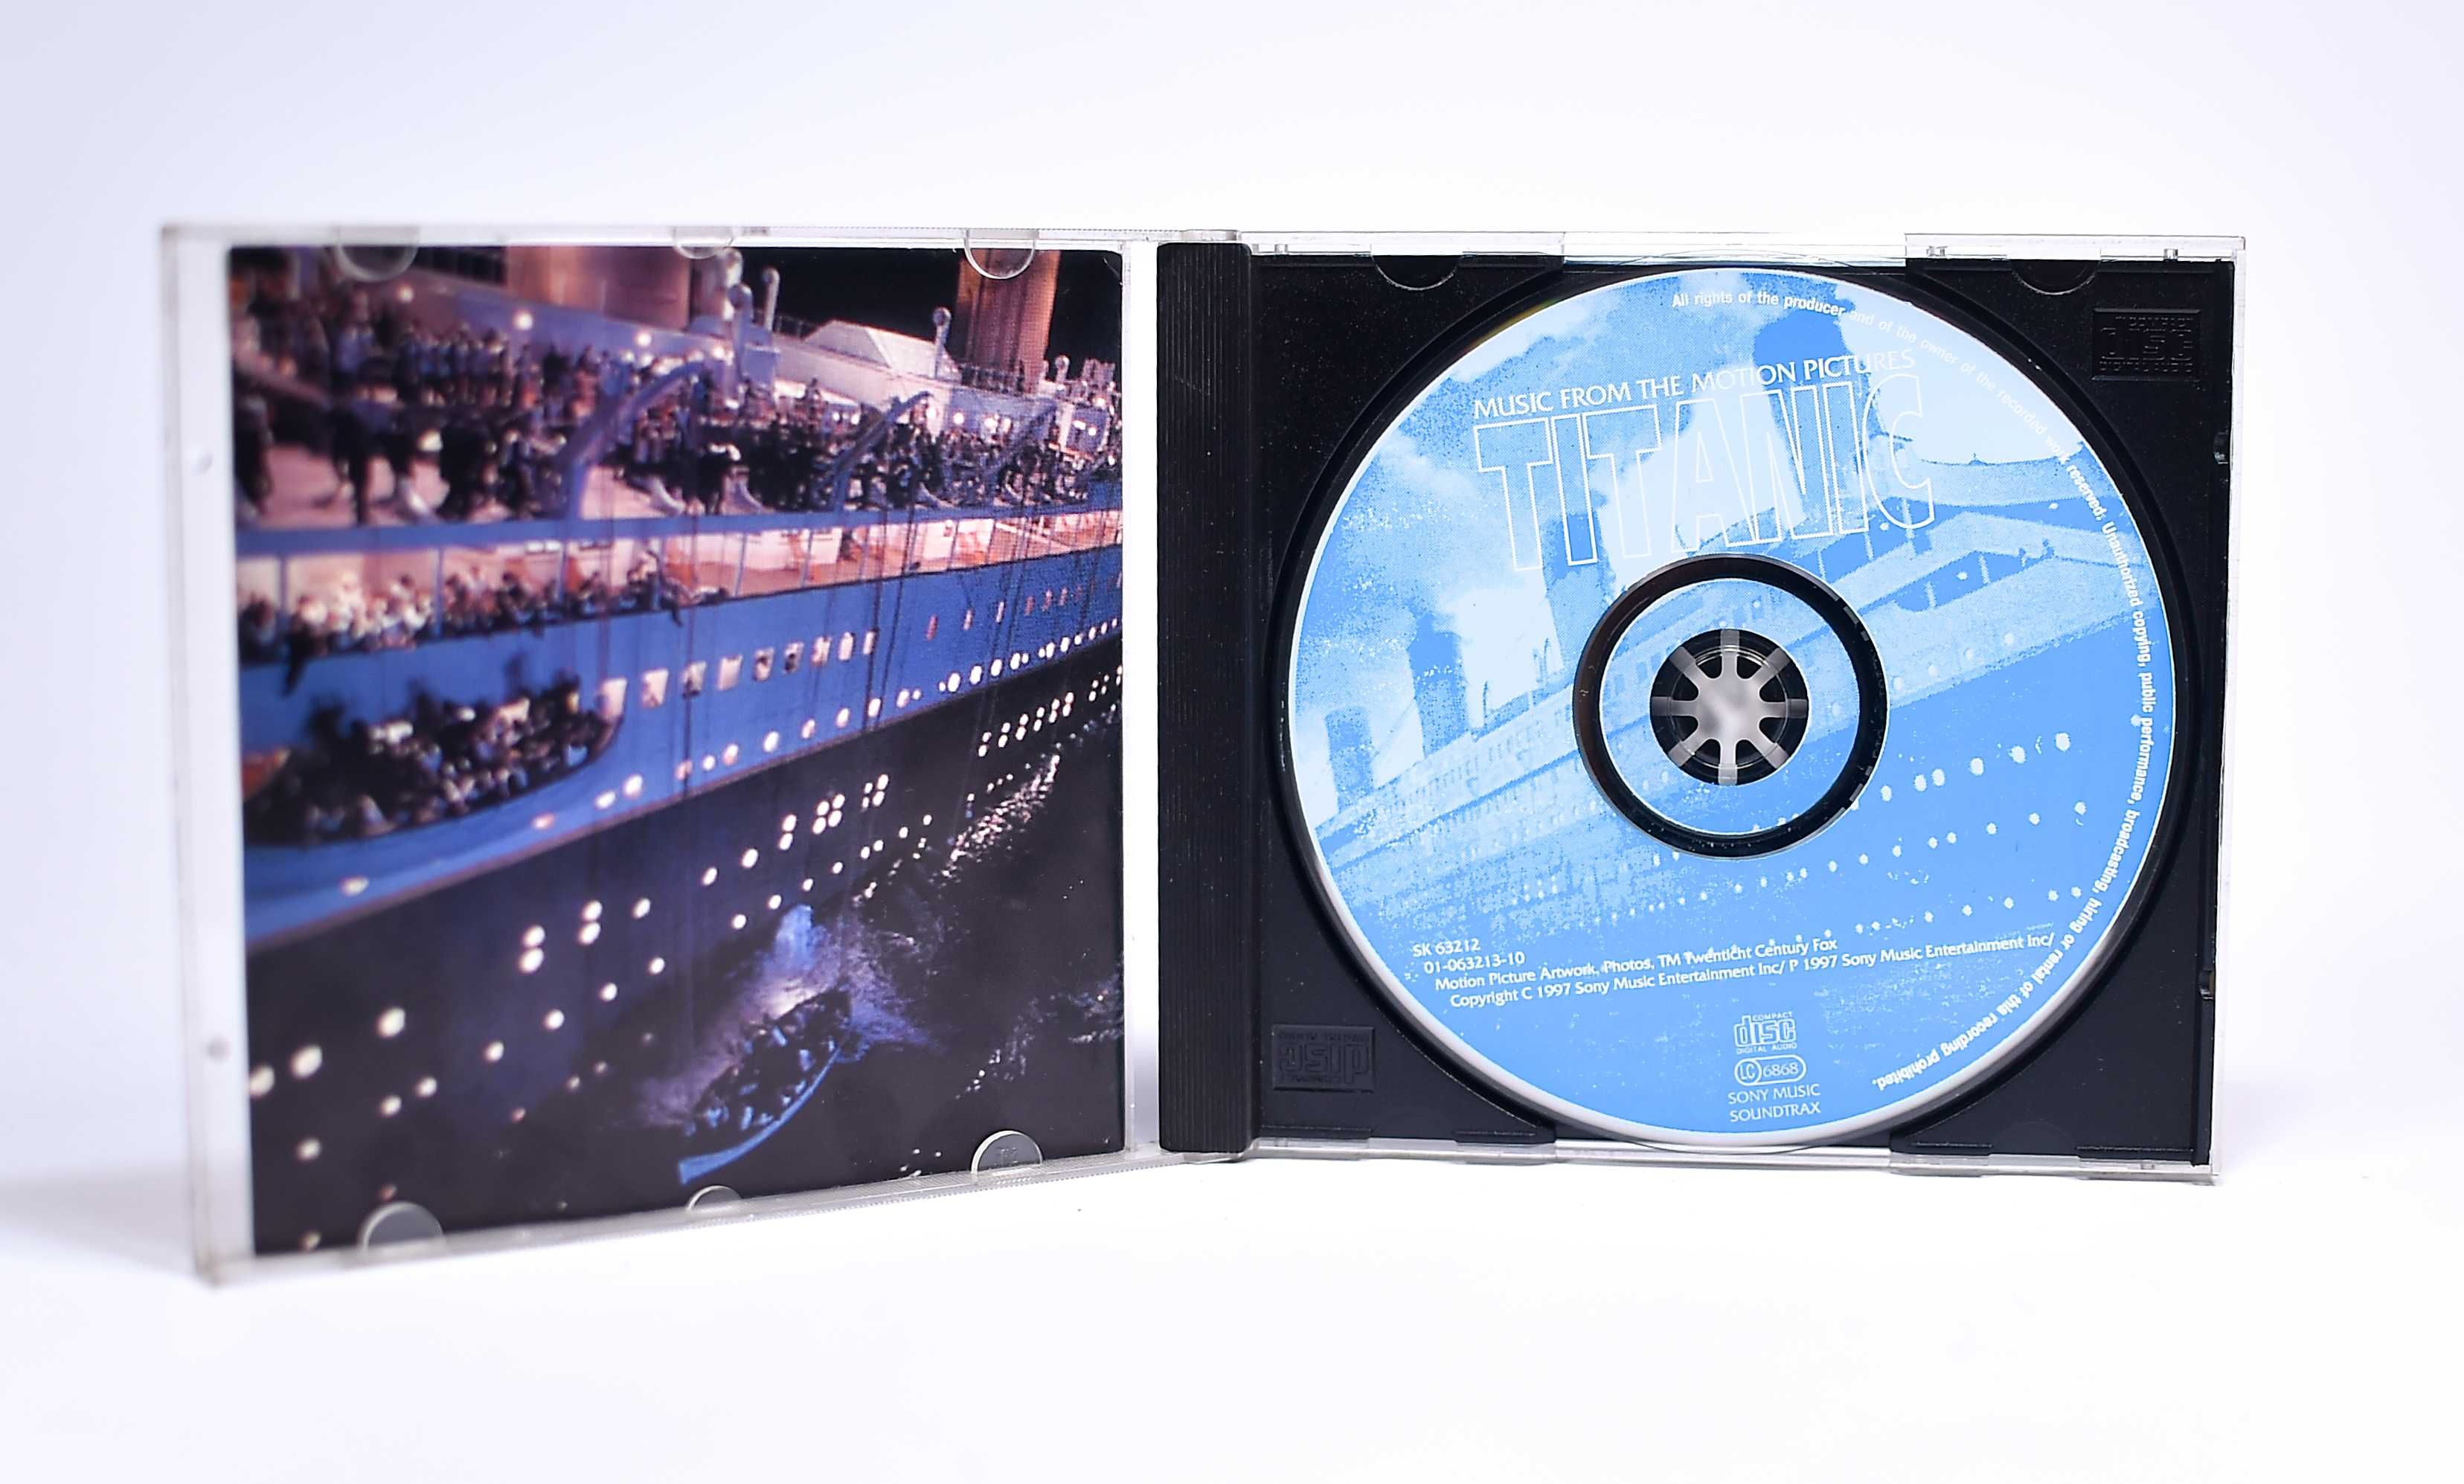 CD Audio # Titanic